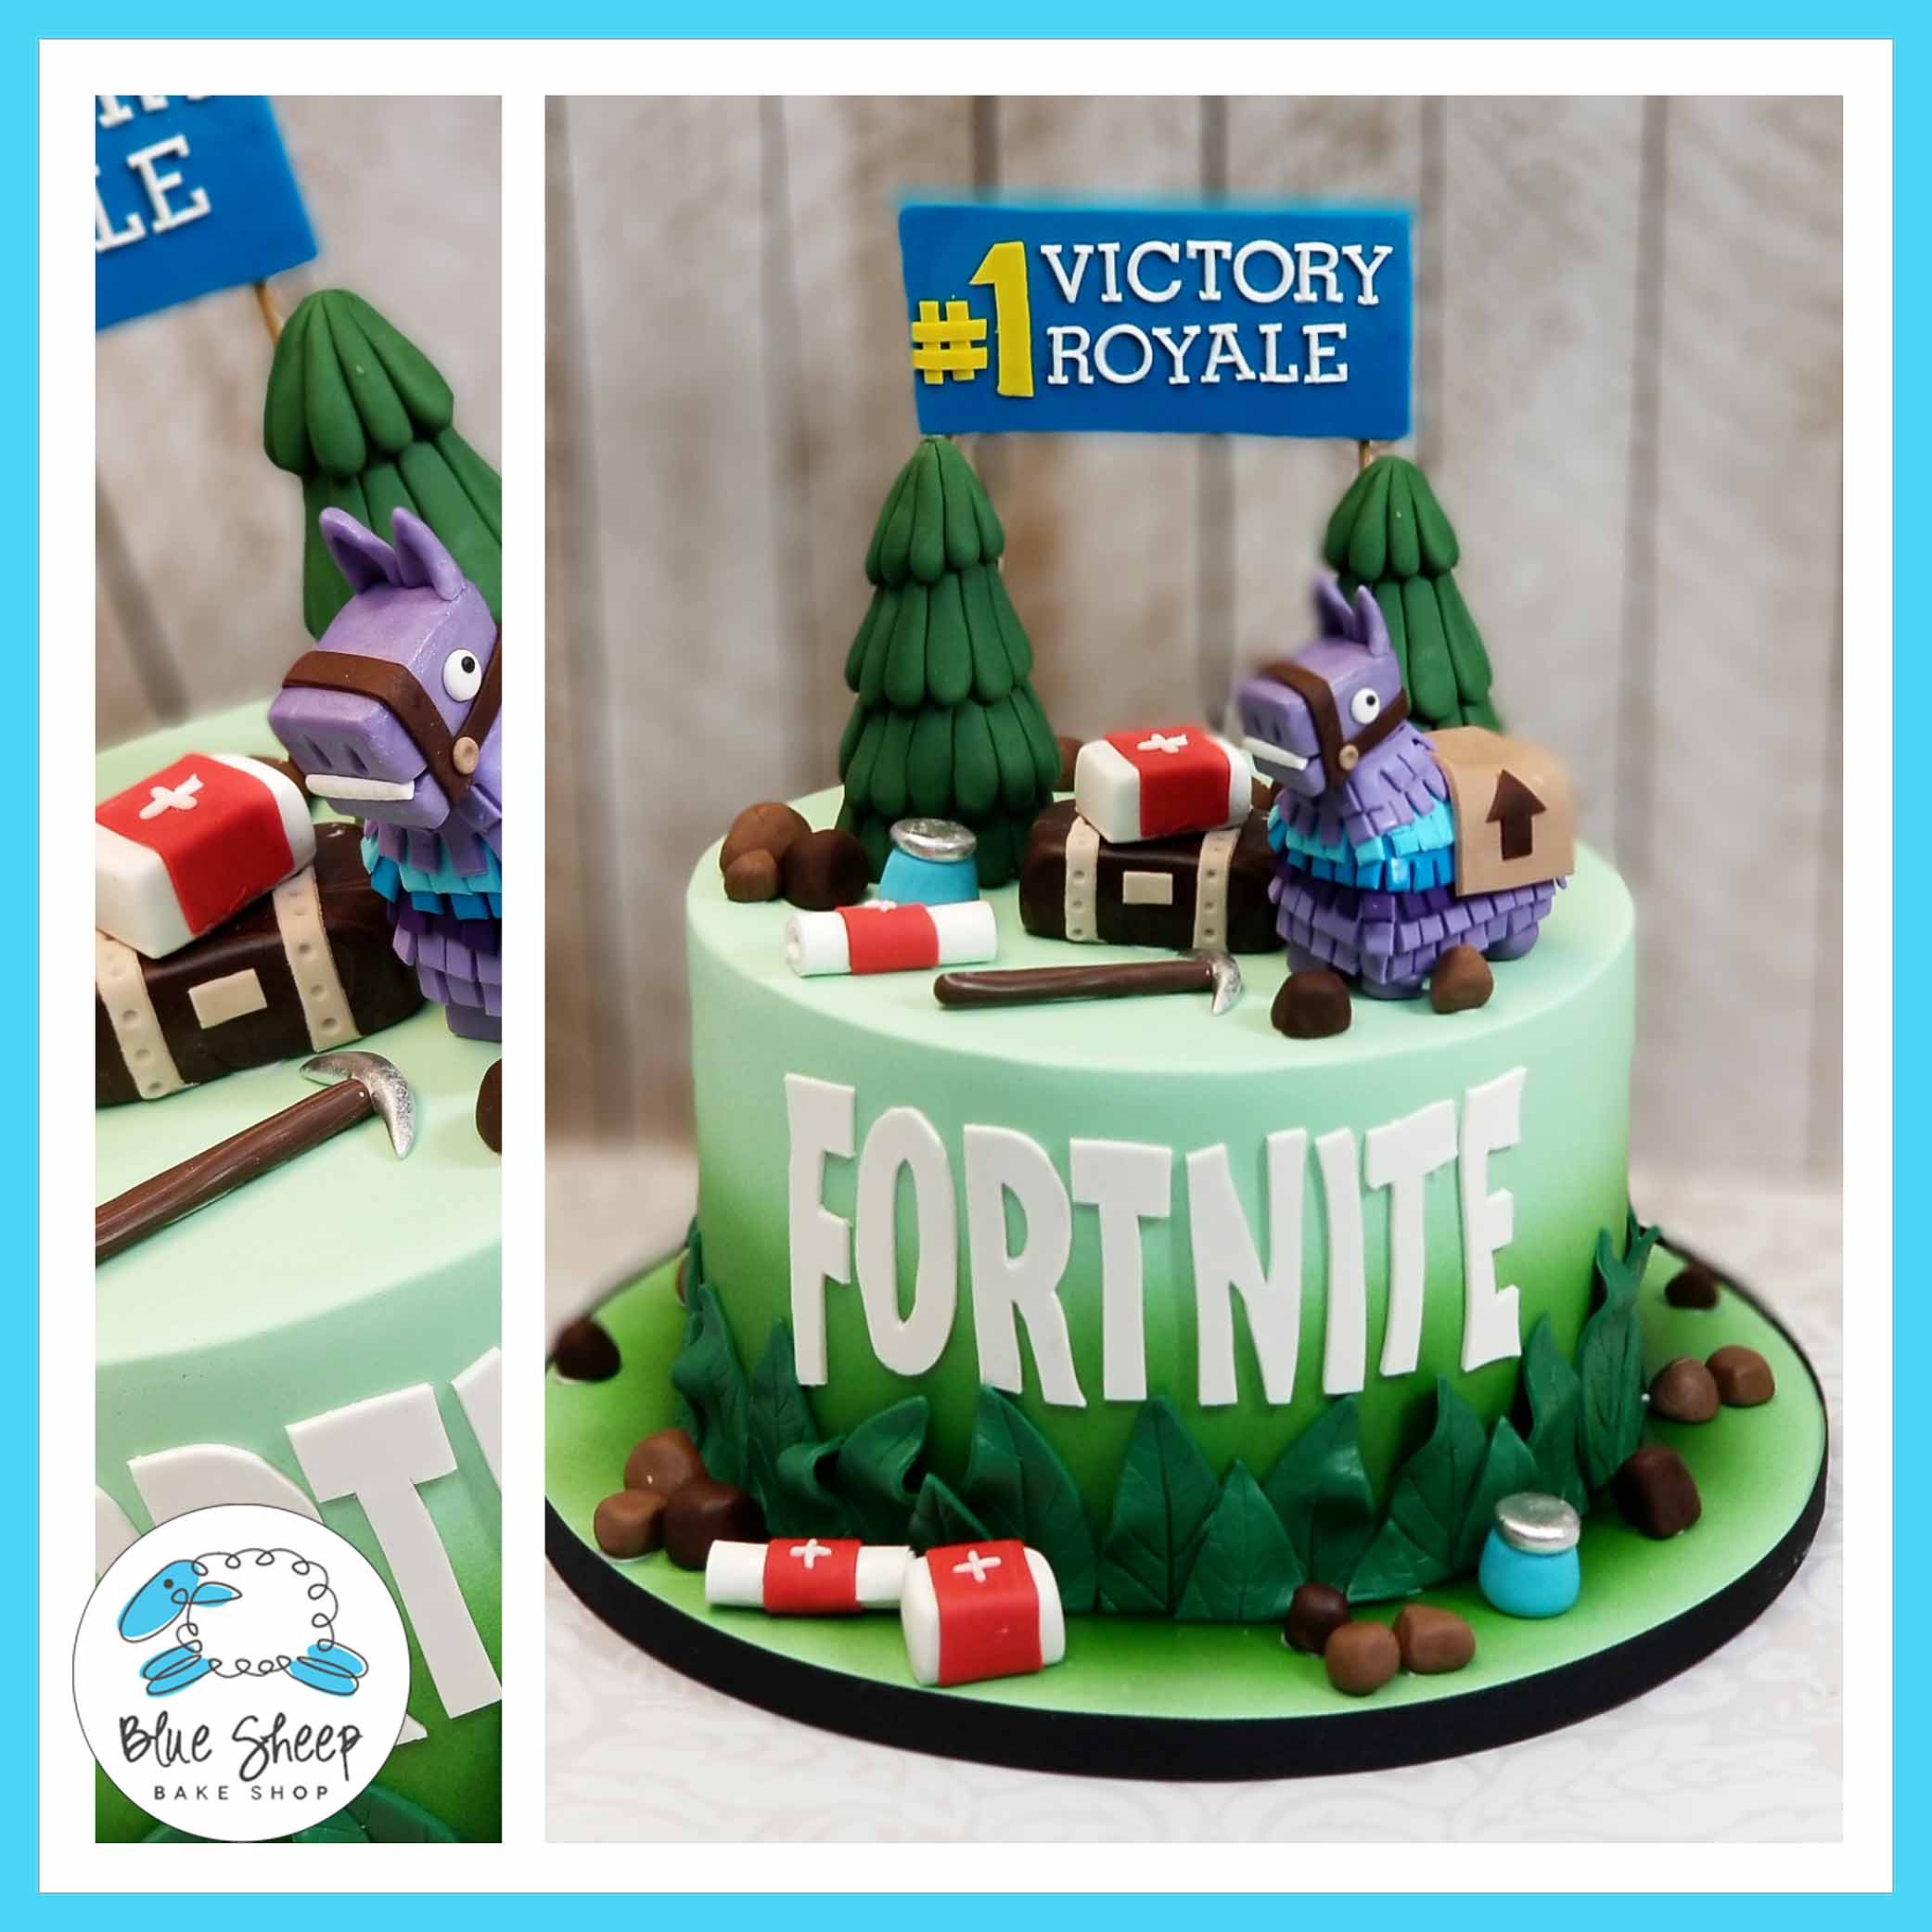 fortnite battle royal cake nj custom cakes blue sheep bake shop - fortnite battle royale loot llama